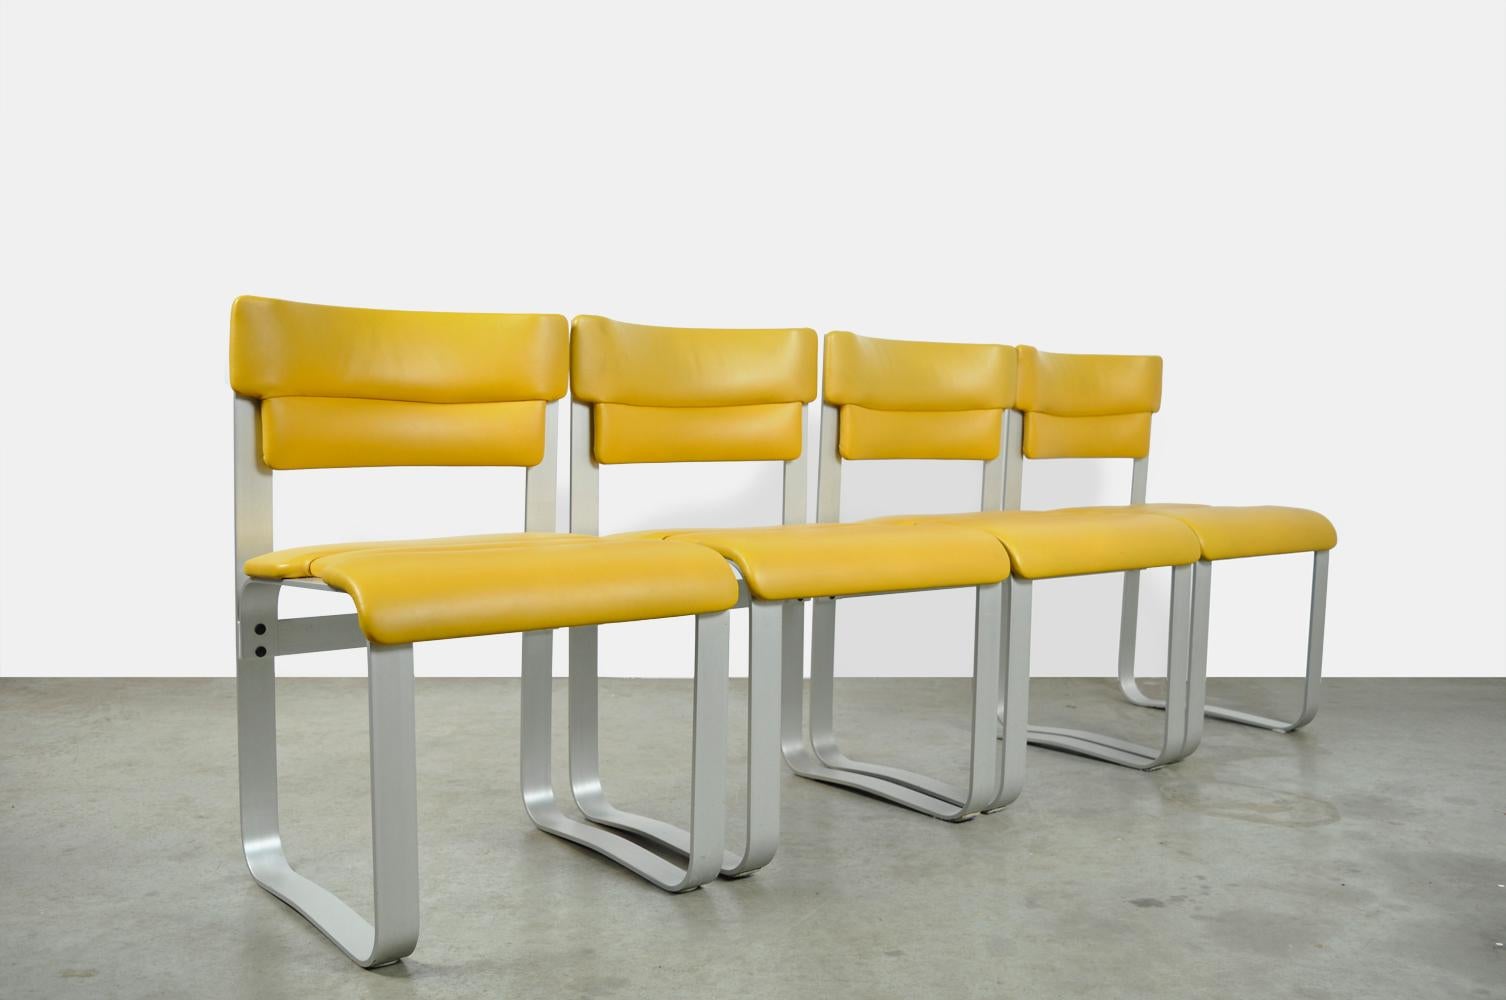 Rare ensemble de 4 chaises de salle à manger attribué au designer finlandais Ilmar Lappalainen et Asko, Finlande des années 1960. Les chaises spéciales ont un cadre incurvé en aluminium anodisé avec une assise et un dossier en similicuir jaune. Les